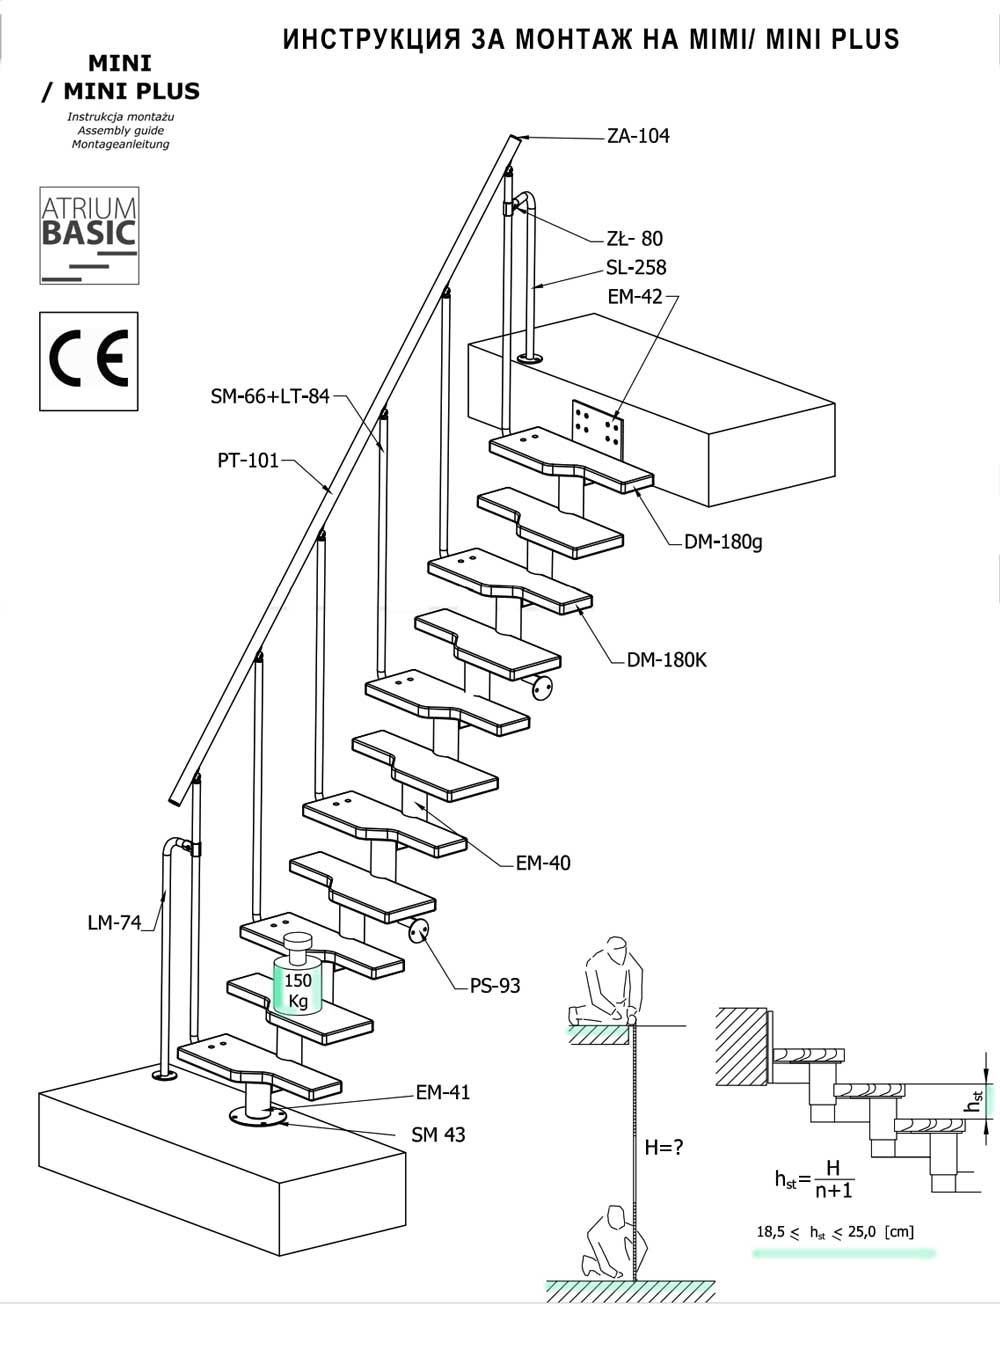 Схема с добавяне и изваждане на стъпала към базавия модел на стълбата и постигане на различна височина